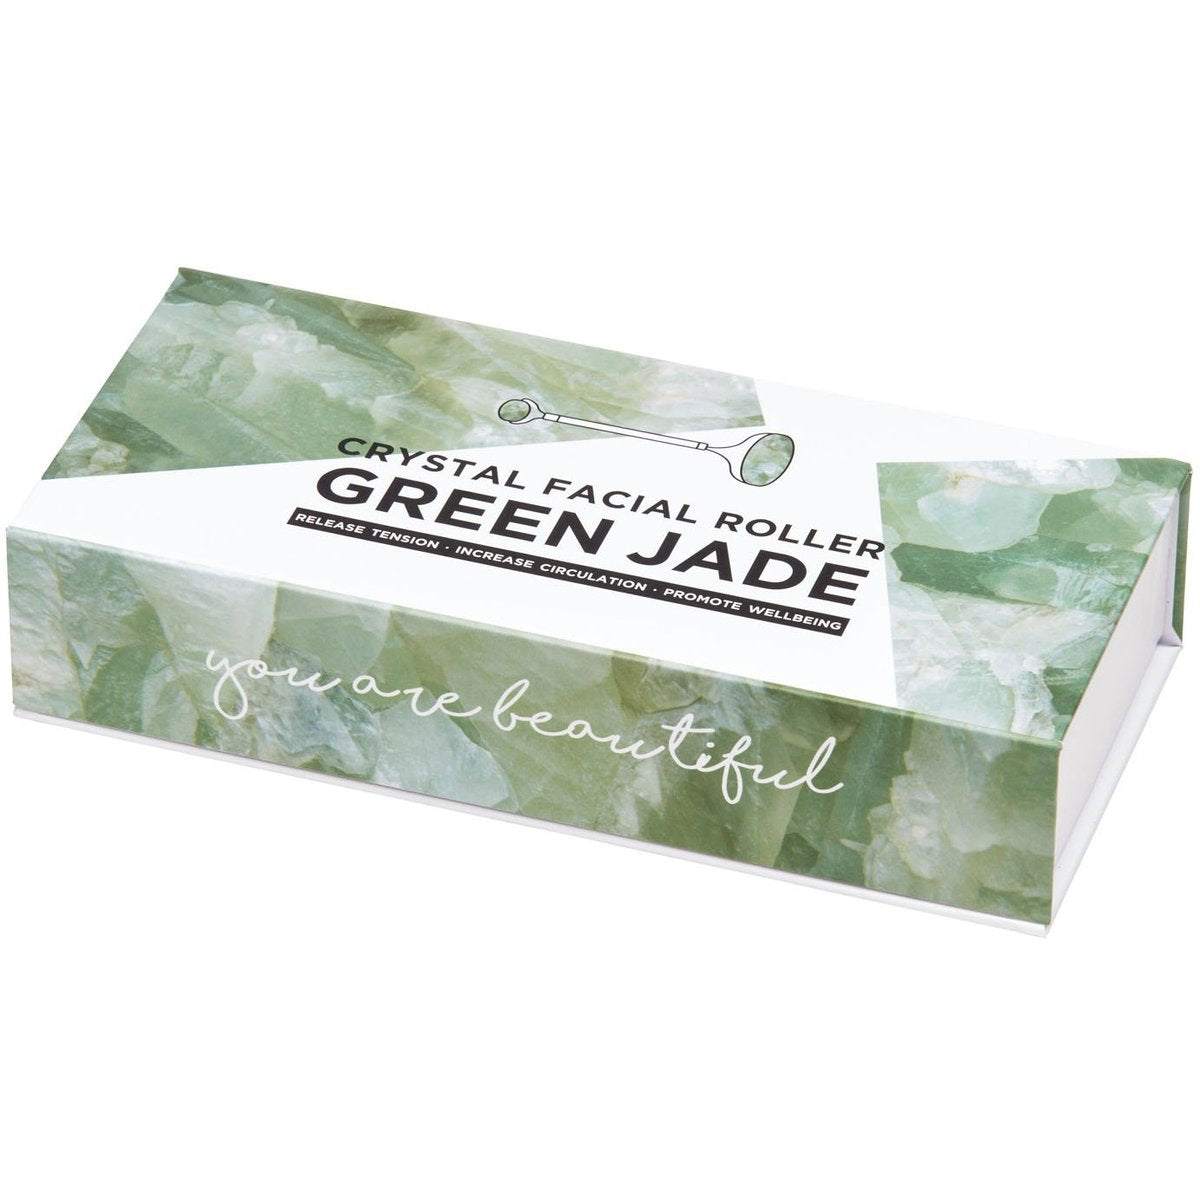 Summer Salt Body Facial Roller, Green Jade Crystal